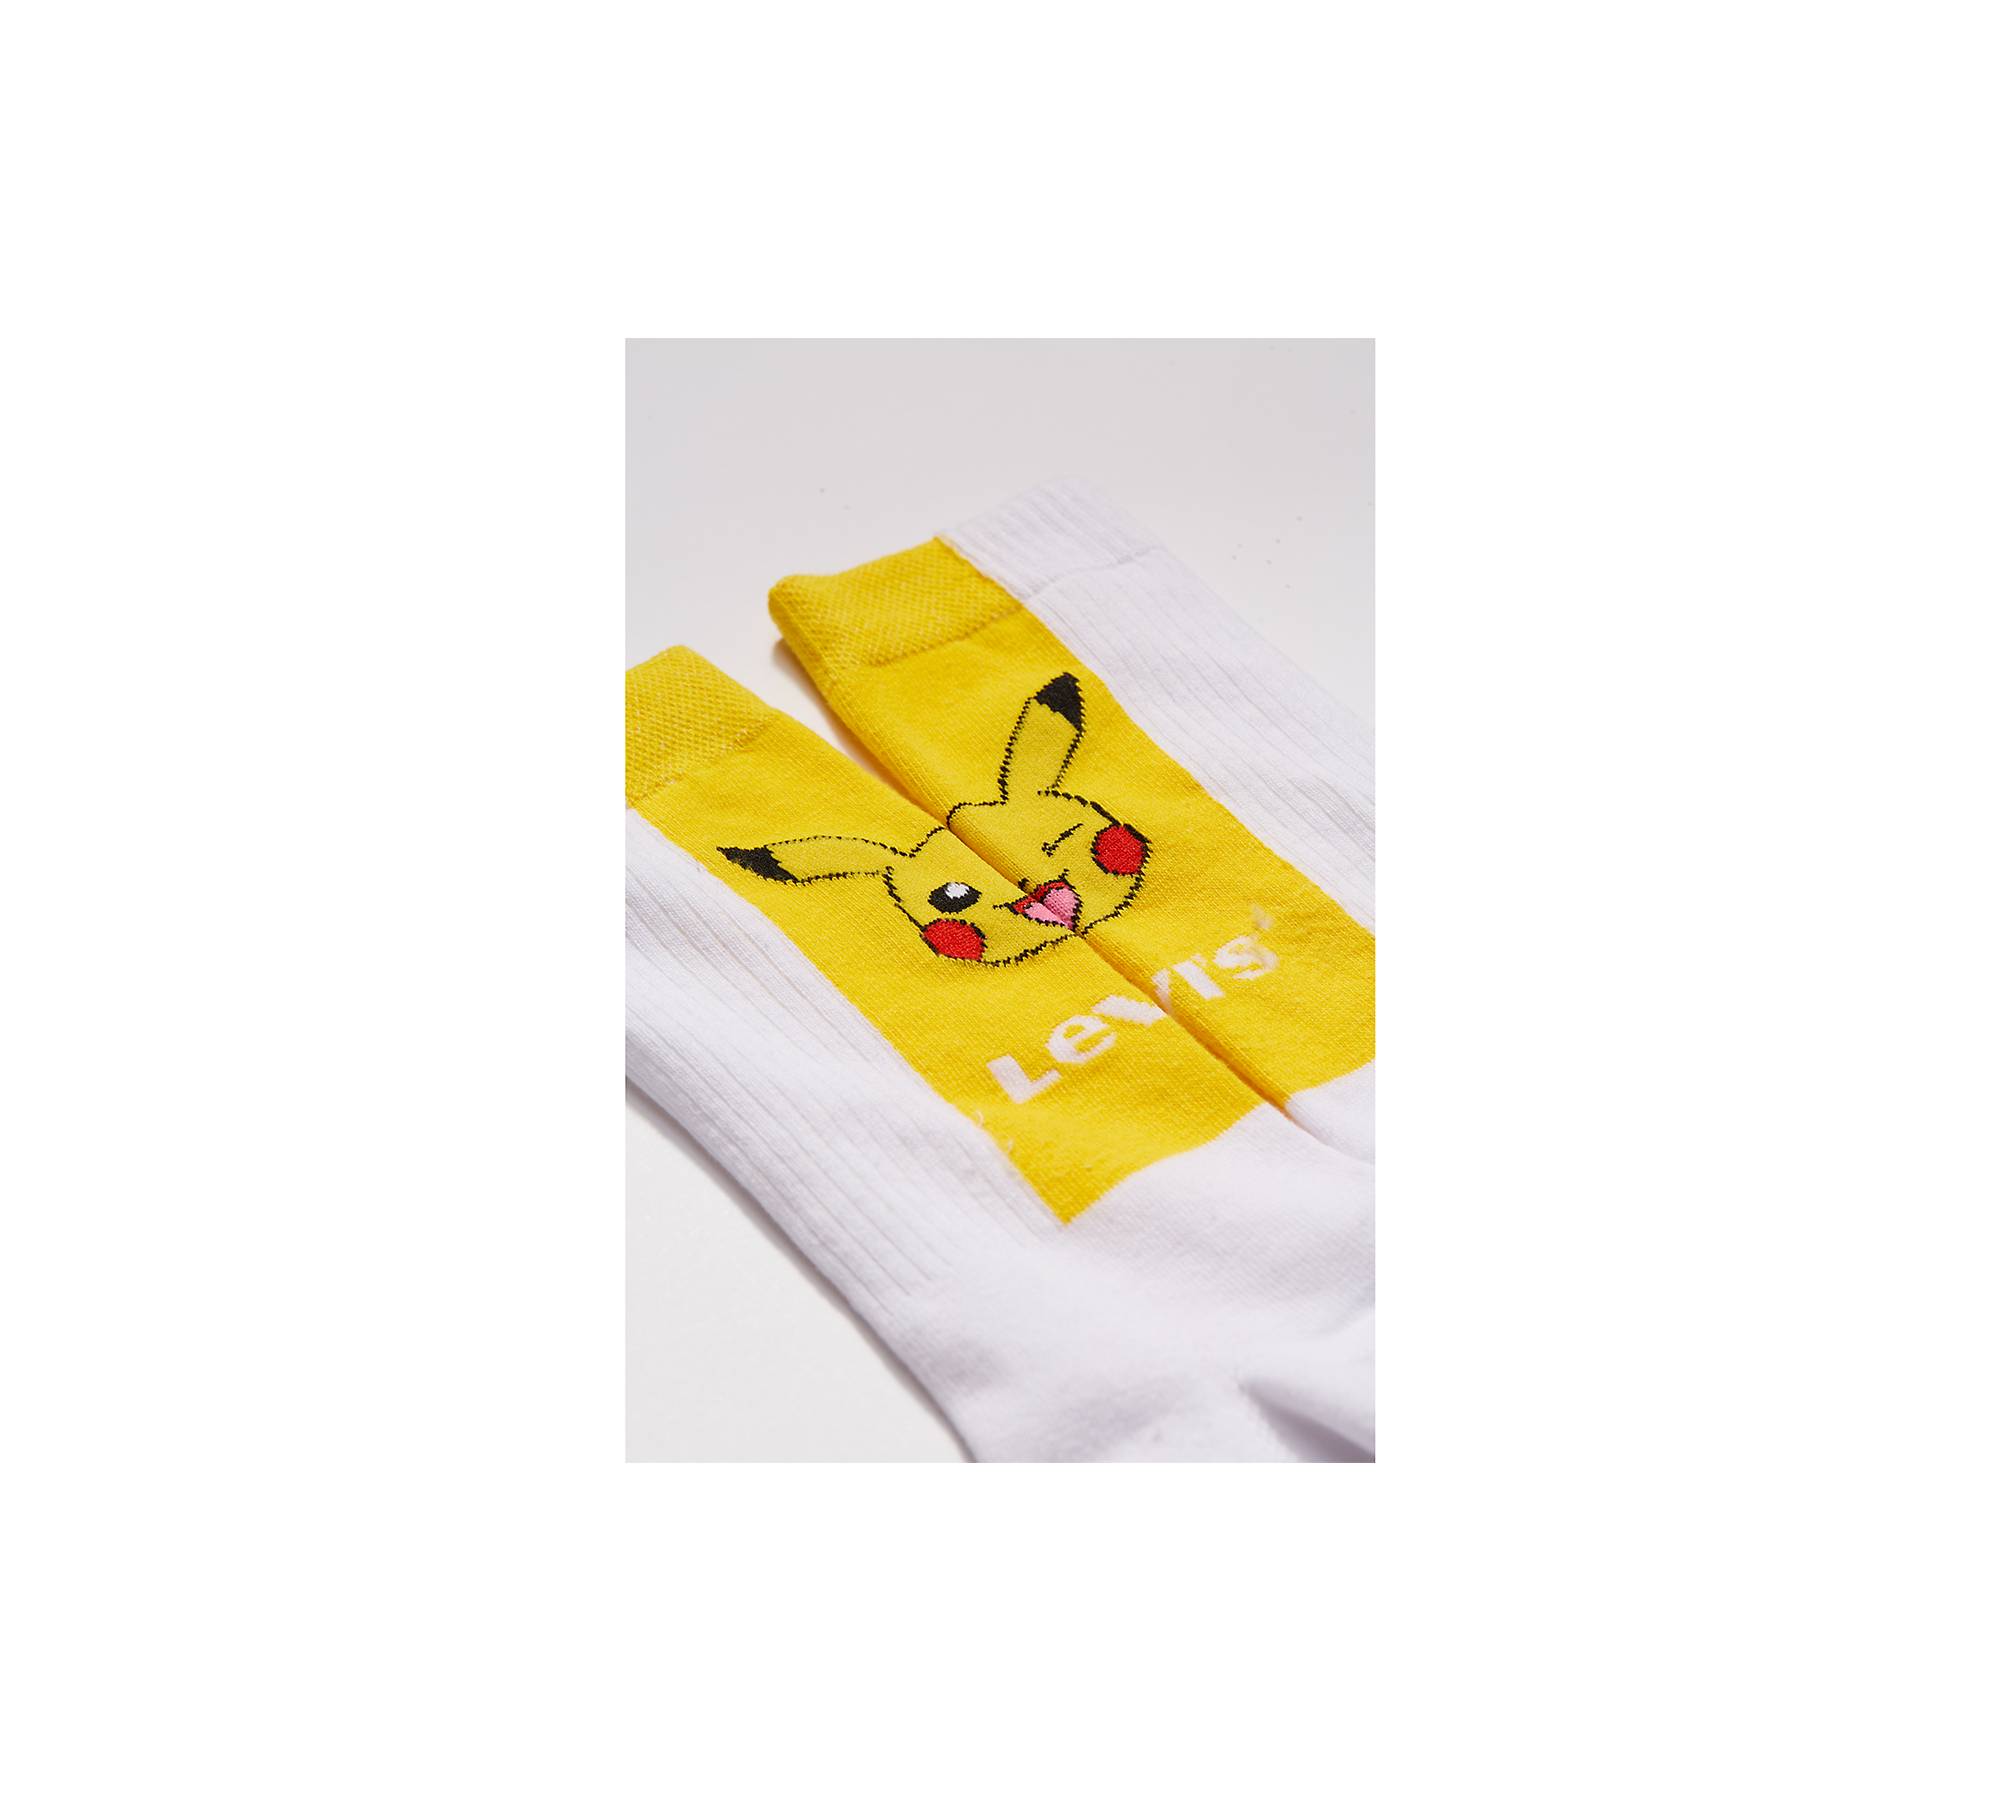 Chaussettes POKEMON - Pikachu